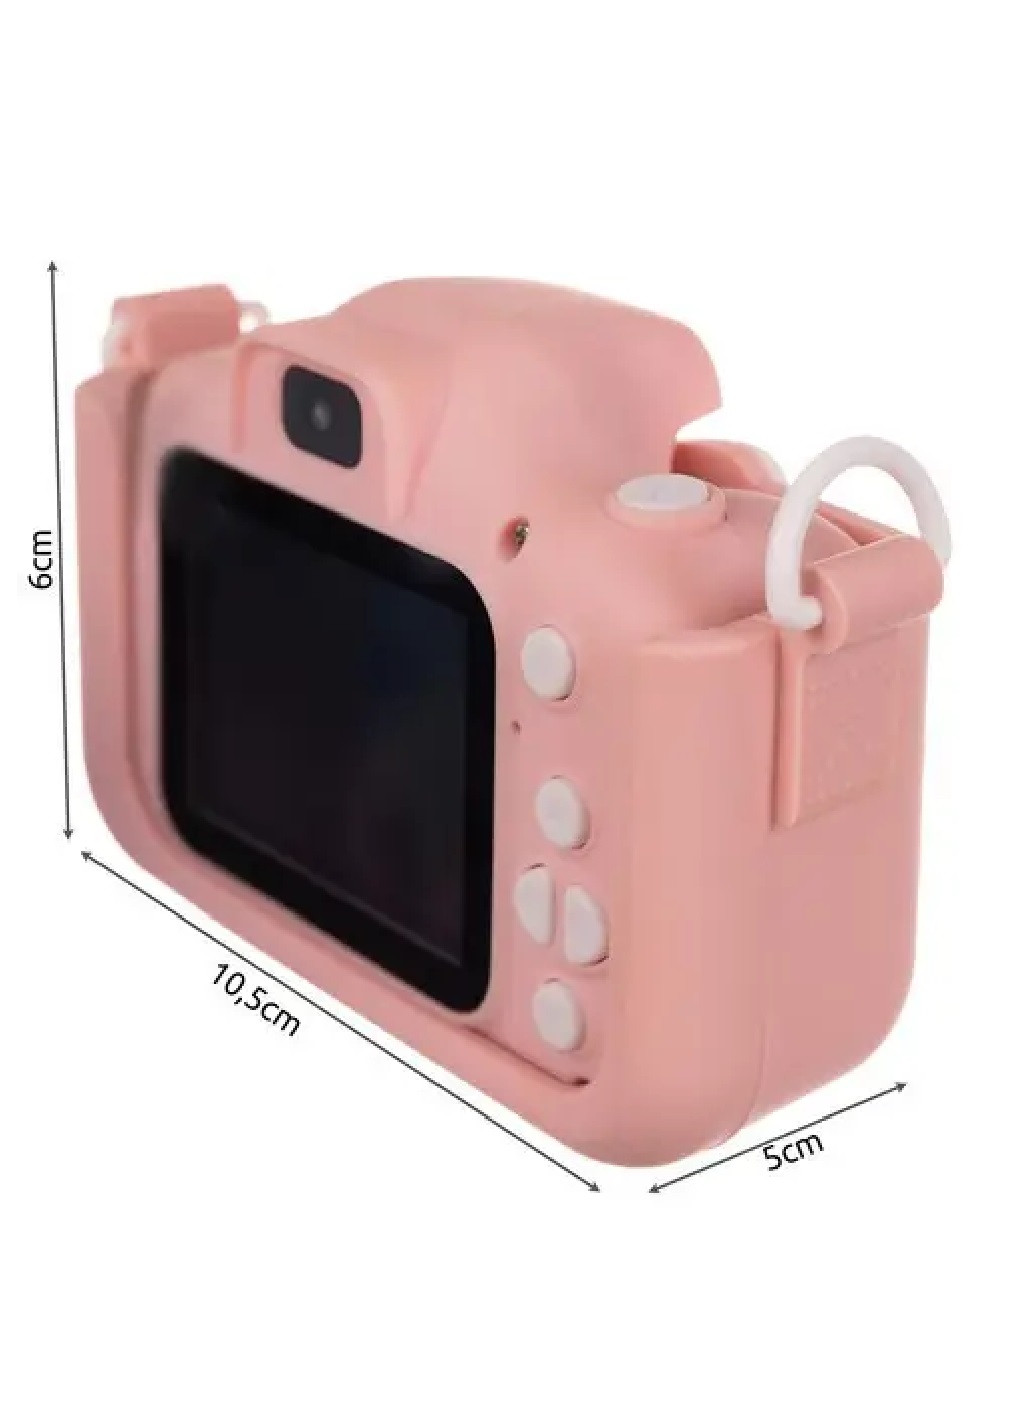 Детский цифровой фотоаппарат с экранчиком играми картой на 32 ГБ в комплекте 5х10,5х6 см (475855-Prob) Розовый Unbranded (272598558)